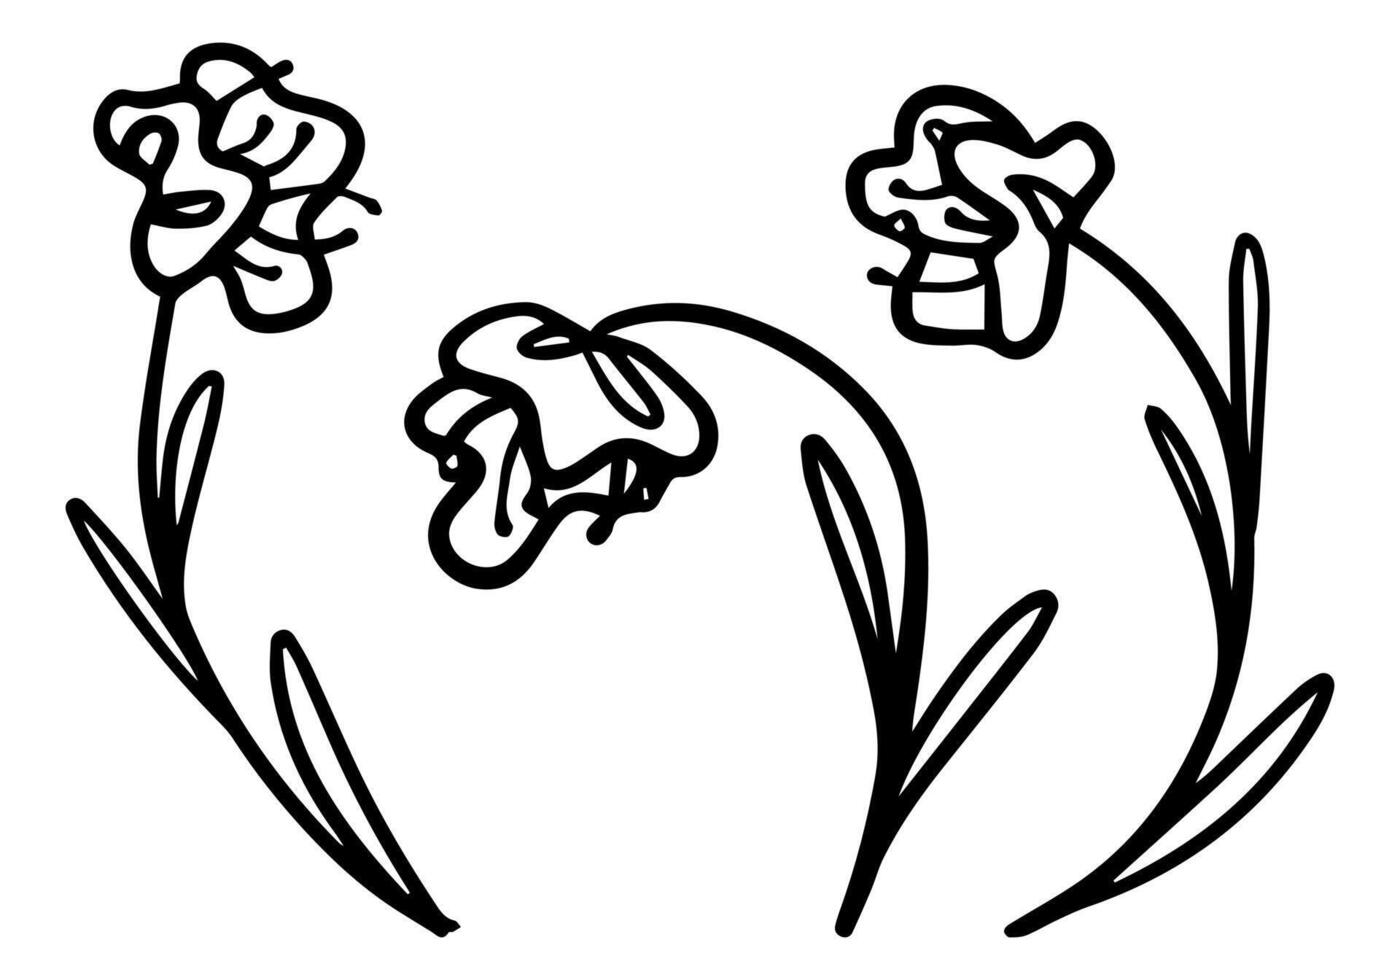 klotter uppsättning av abstrakt blommor. hand dragen vektor illustrationer. svart översikt årgång ritningar isolerat på vit. enkel kontur fantasi botanisk element för design, kort, skriva ut, dekor, klistermärken.